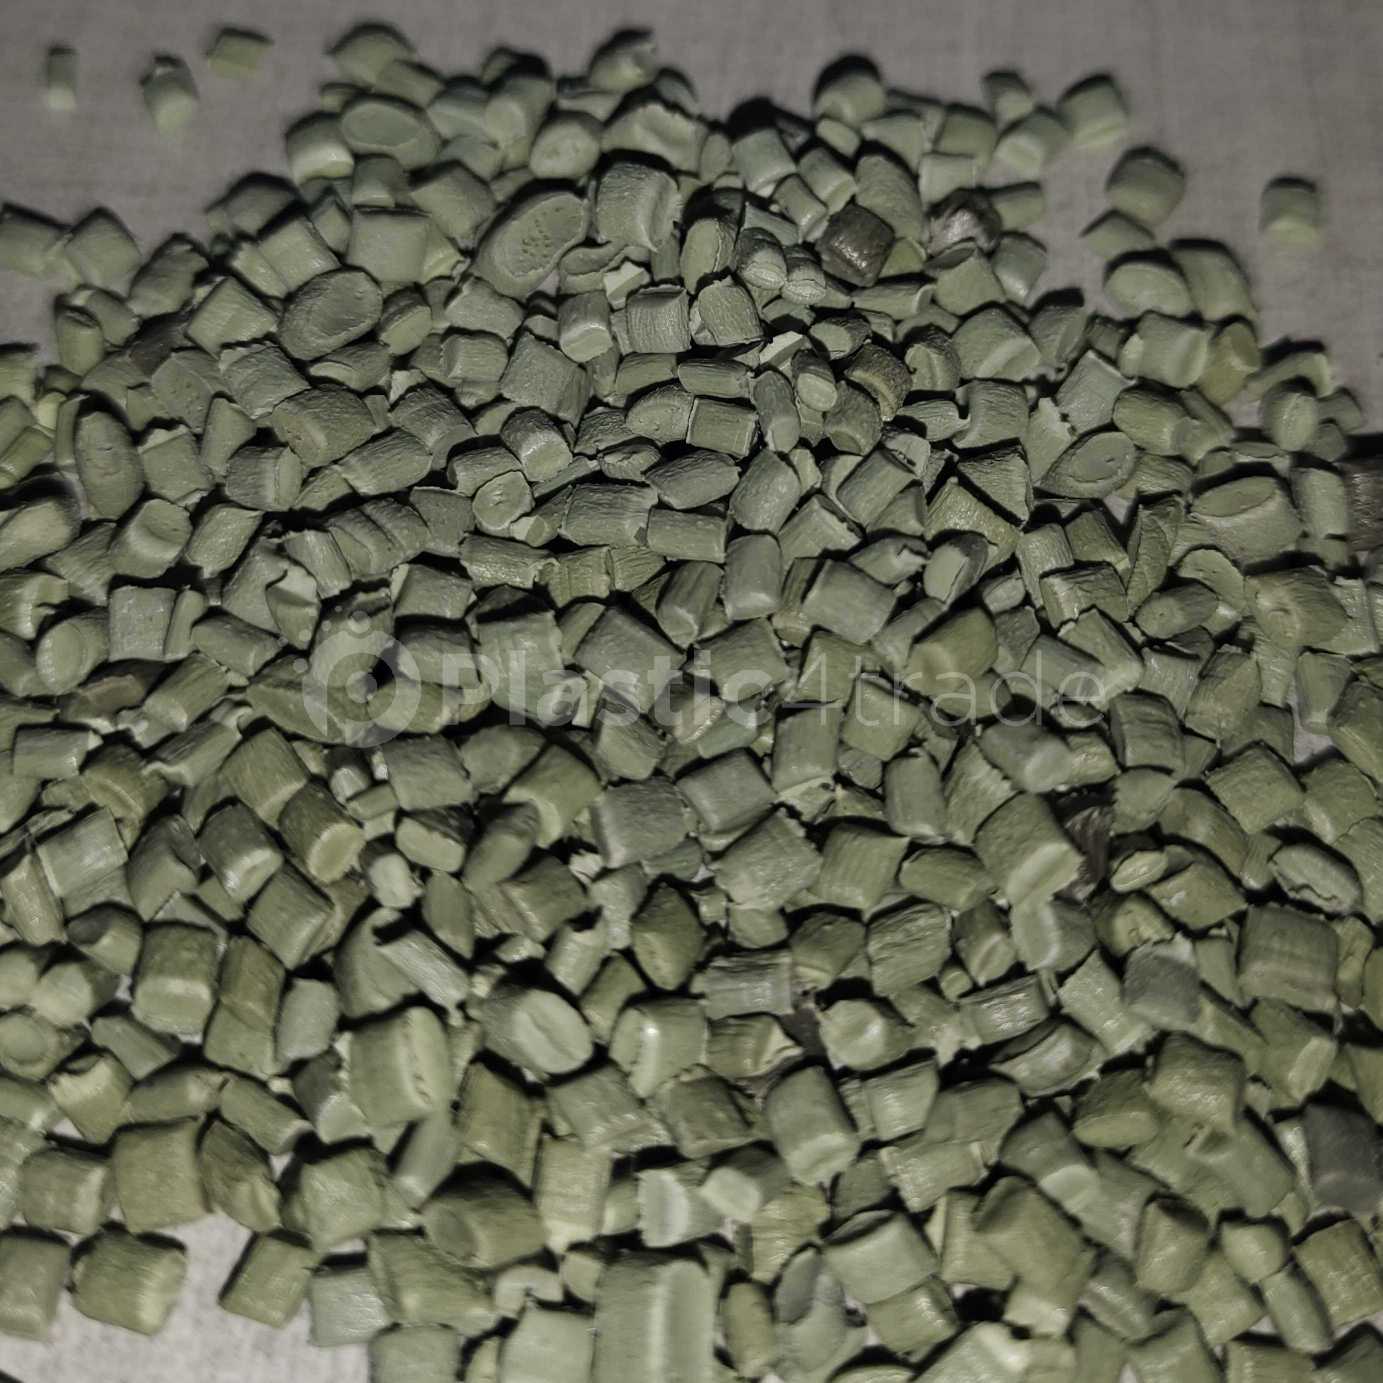 LD GREEN REPROCESS GREUNALS LDPE Reprocess Granule Film Grade ahmedabad india Plastic4trade